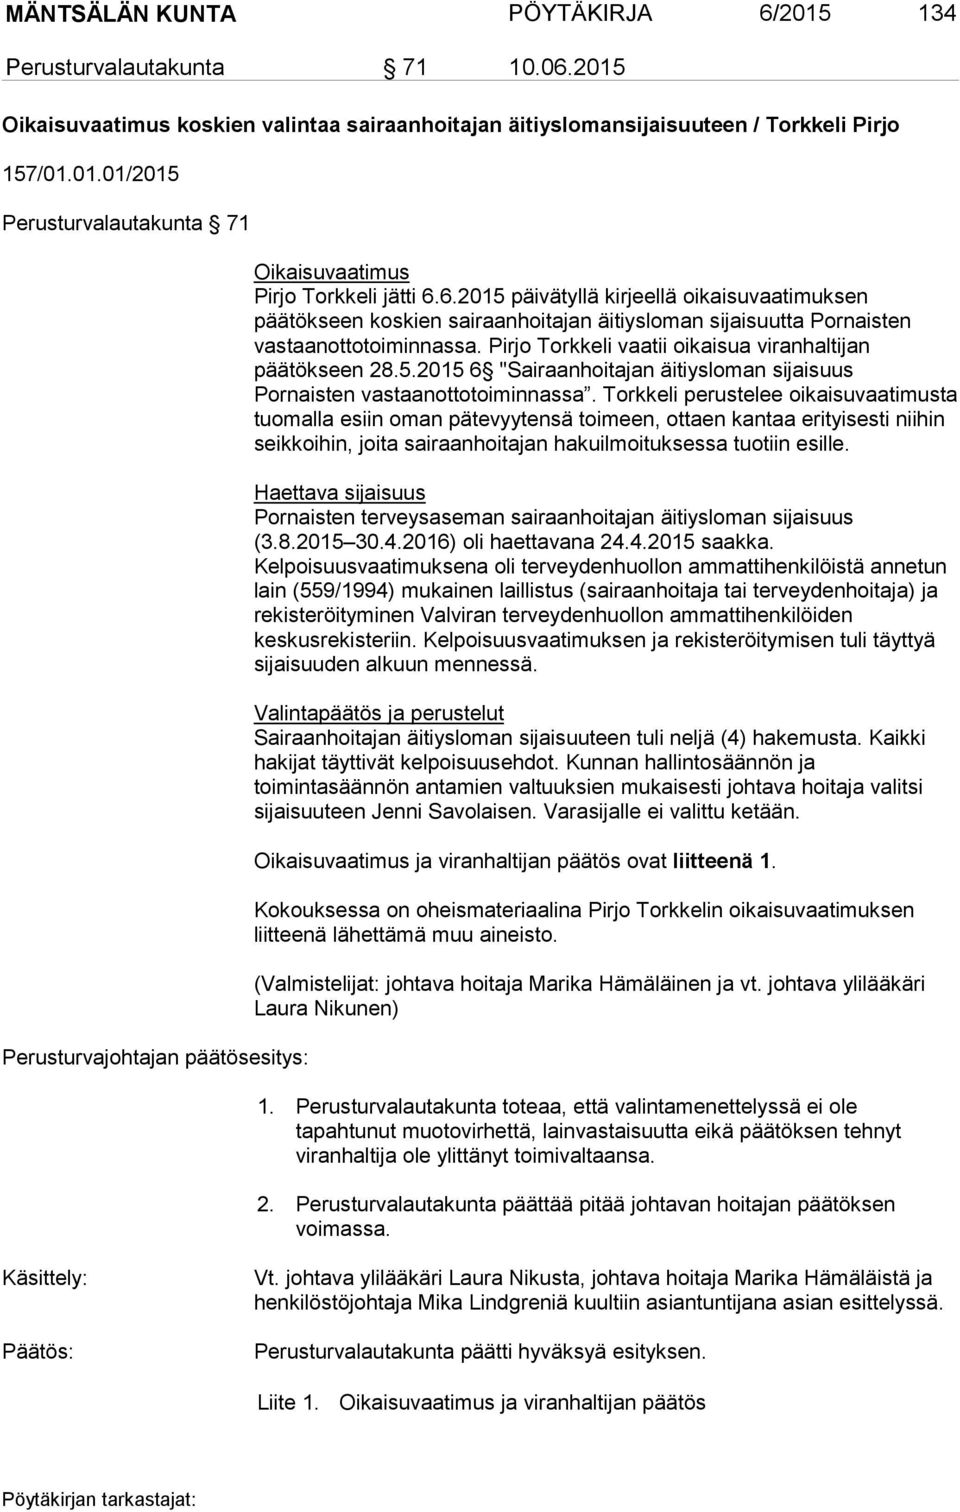 5.2015 6 "Sairaanhoitajan äitiysloman sijaisuus Pornaisten vastaanottotoiminnassa.